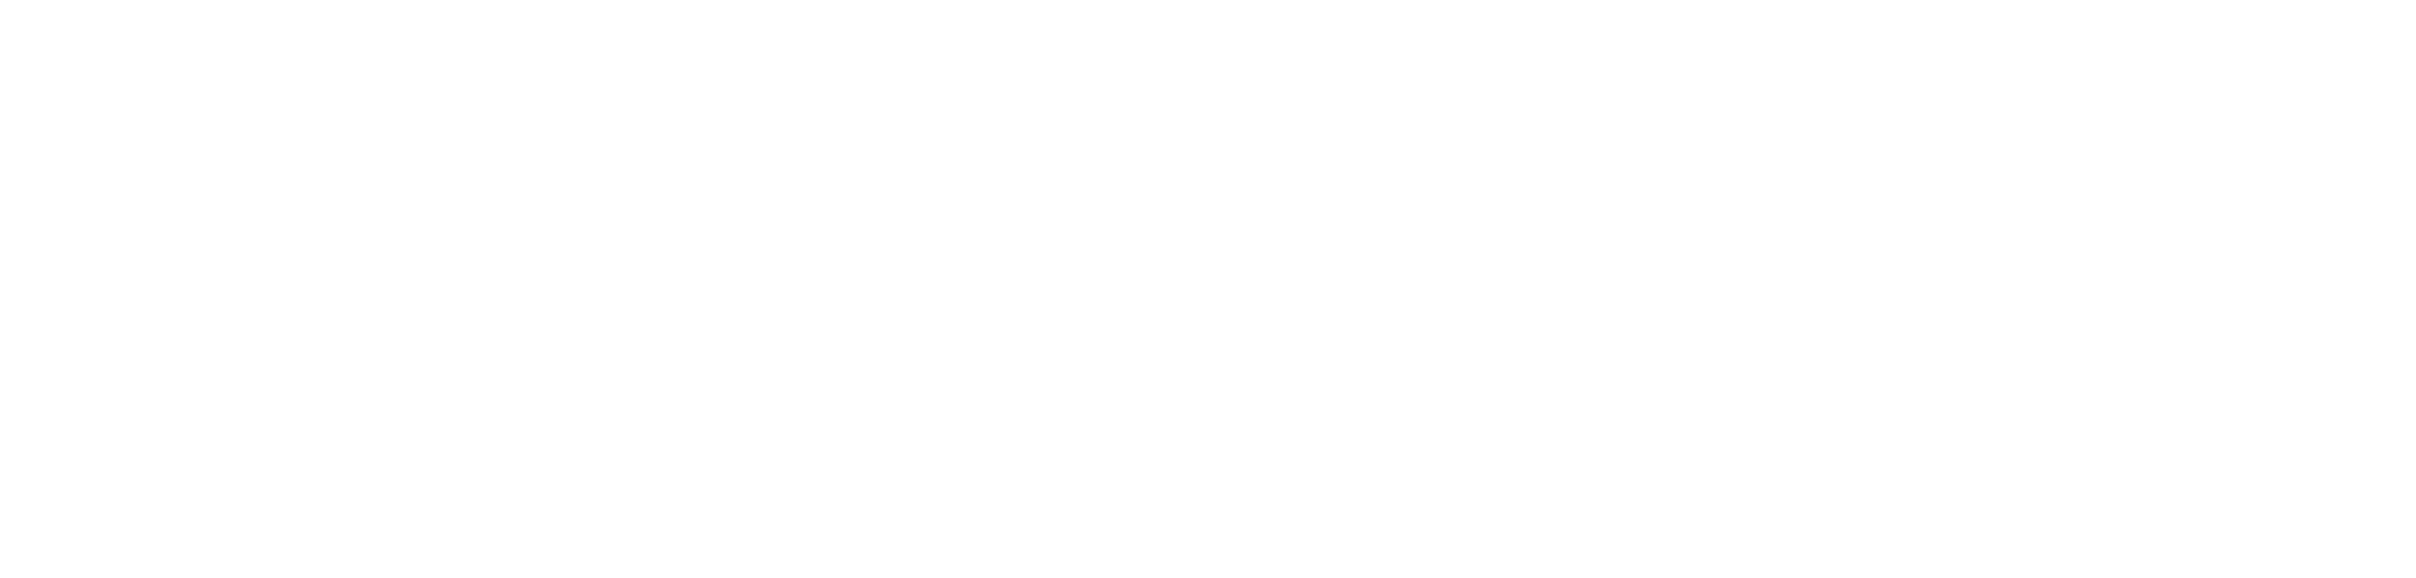 La Crète, berceau de la Méditerranée